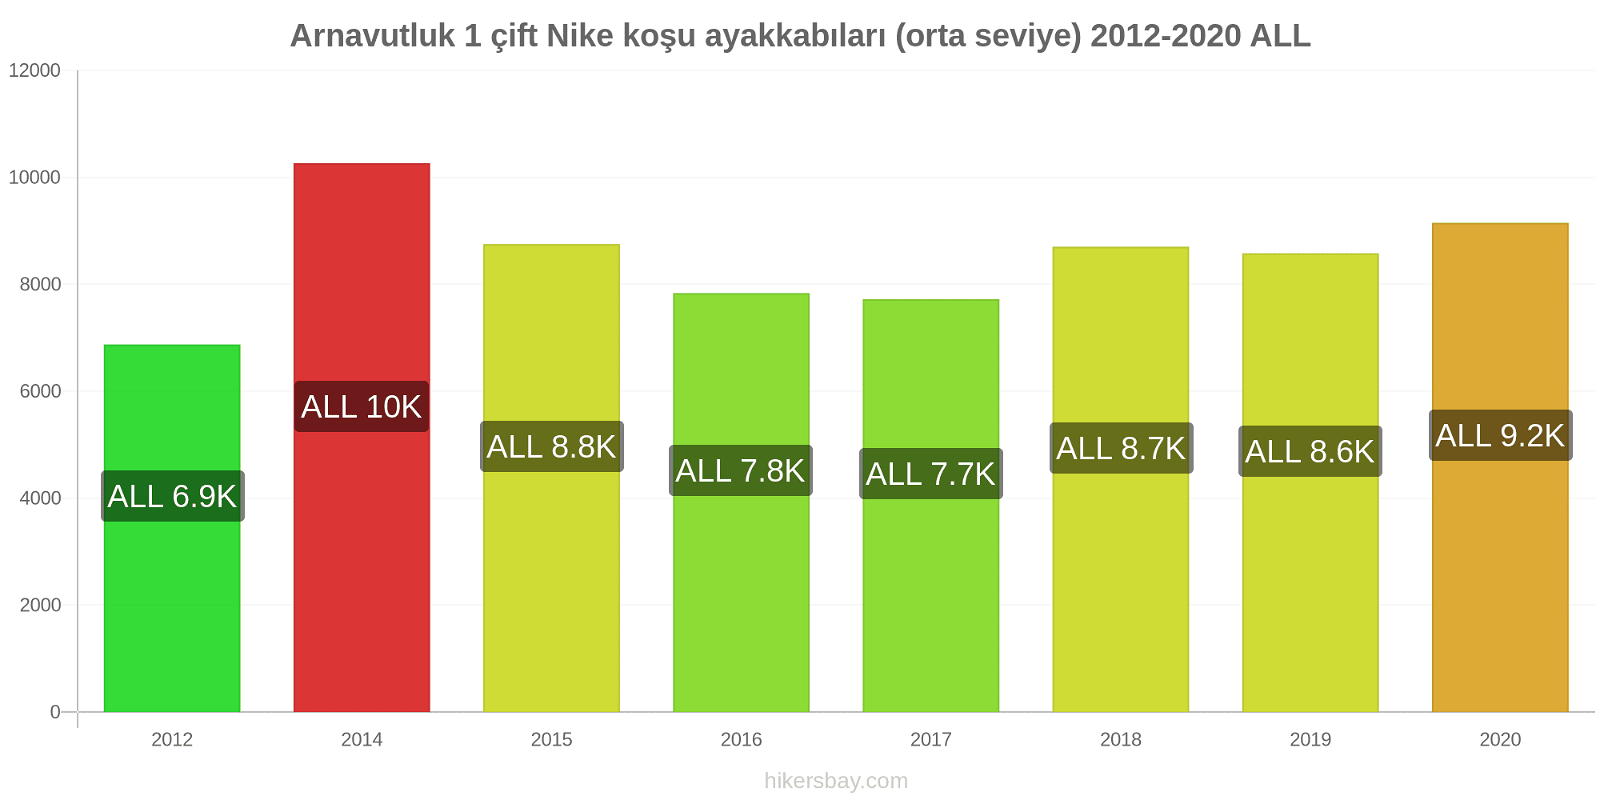 Arnavutluk fiyat değişiklikleri 1 çift Nike koşu ayakkabıları (orta seviye) hikersbay.com